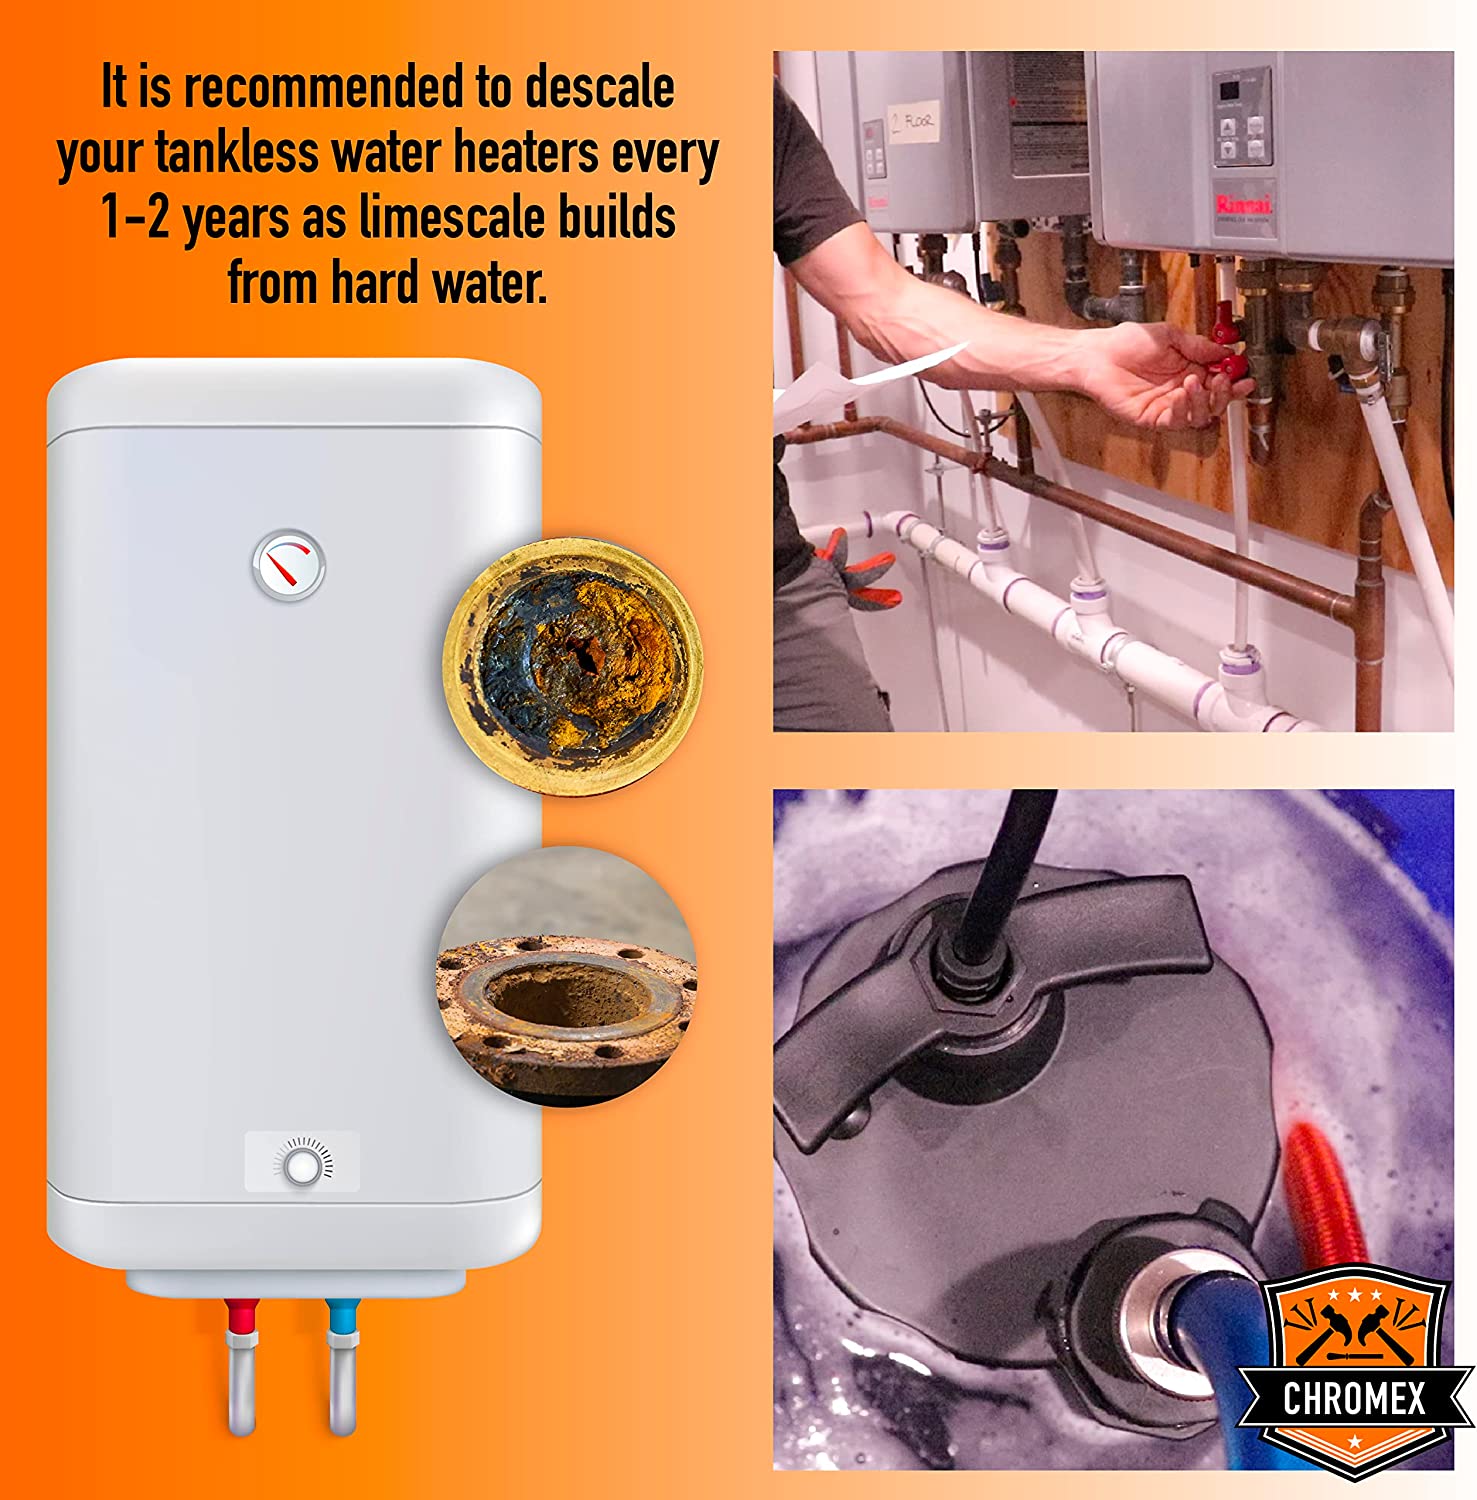 Tankless Water Heater Flush Kit - Just add Vinegar